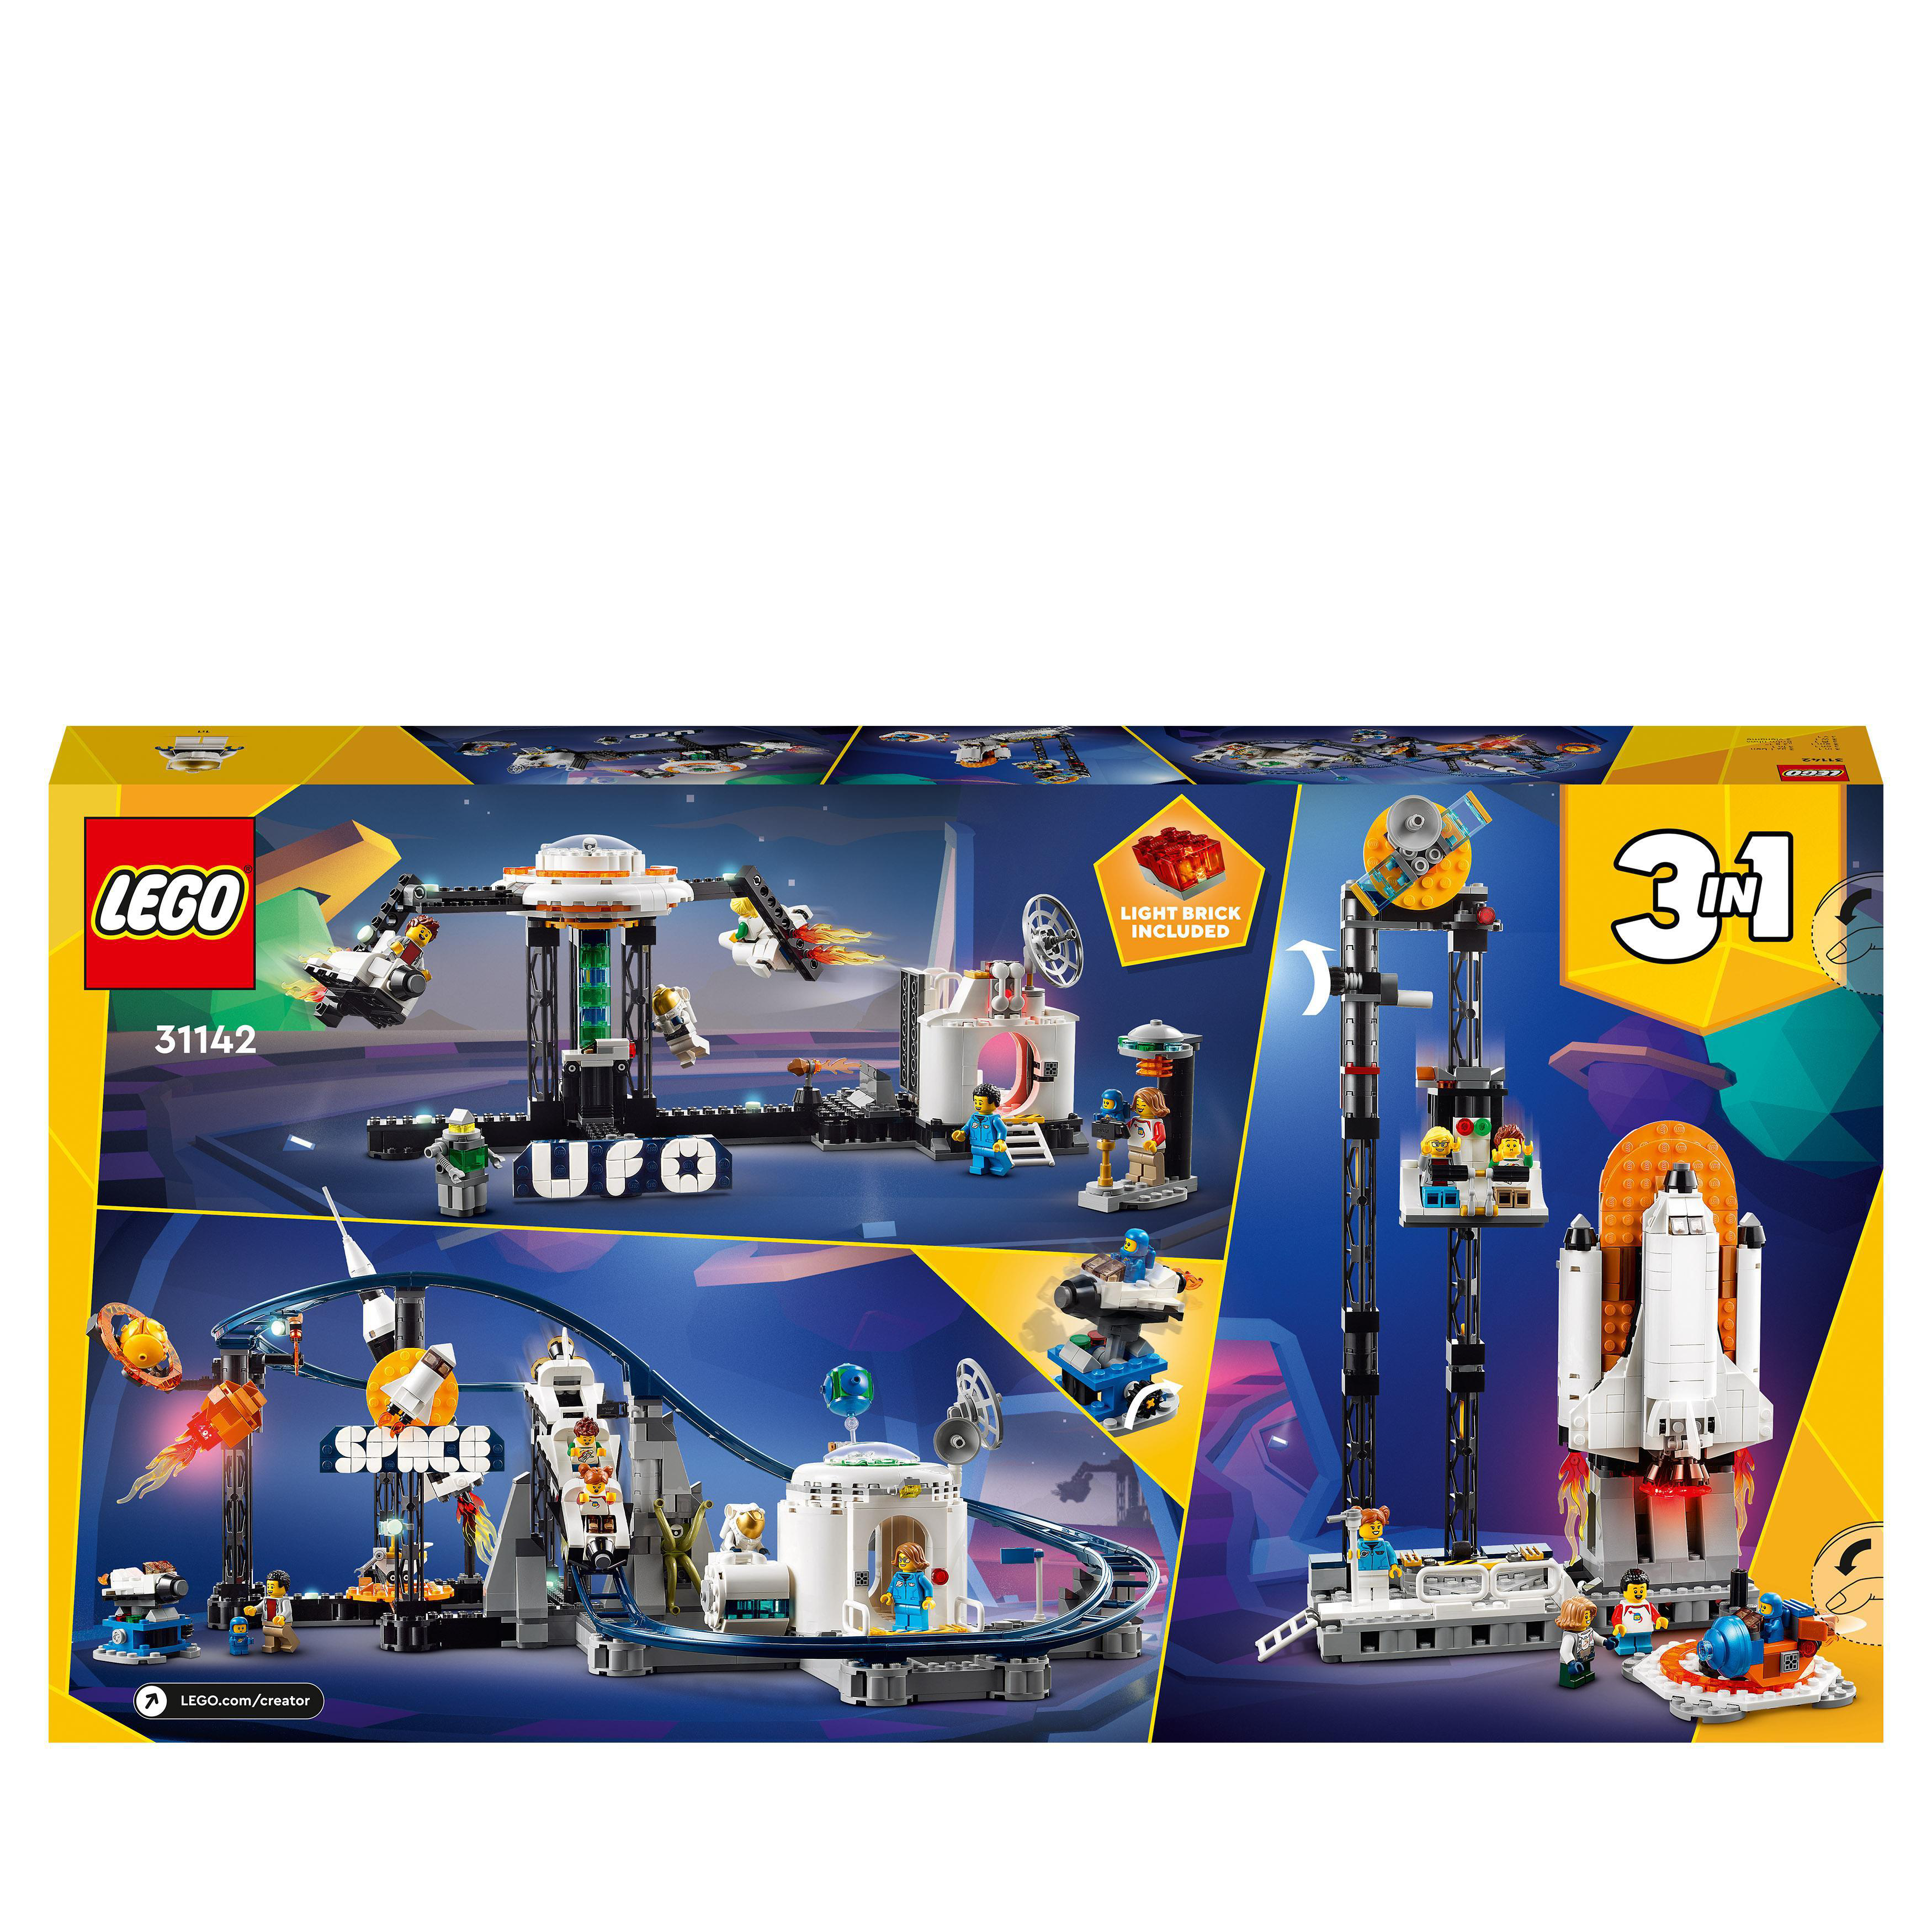 LEGO Creator 31142 Weltraum-Achterbahn Mehrfarbig Bausatz